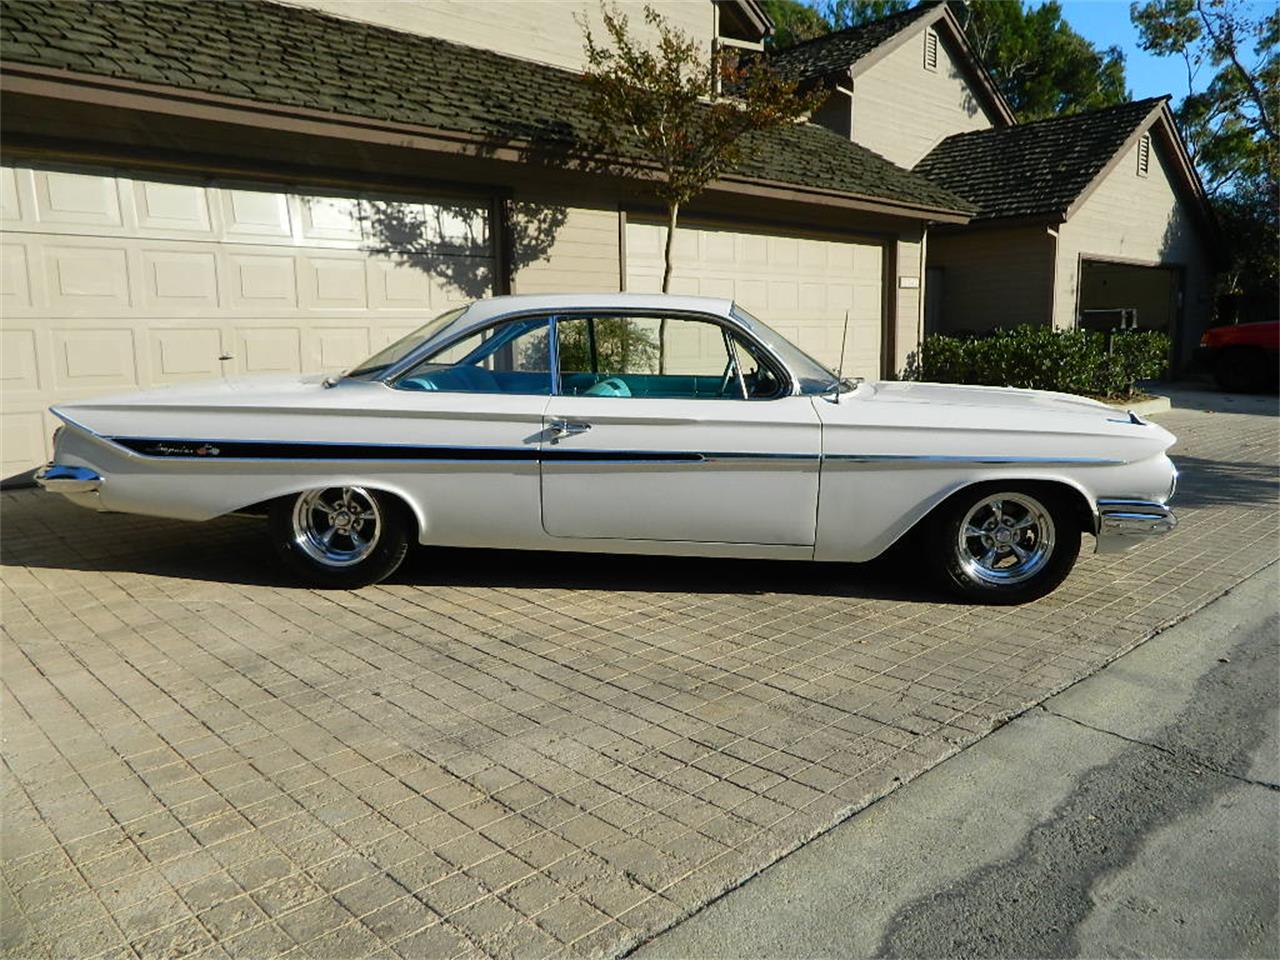 For Sale: 1961 Chevrolet Impala in Orange, California.